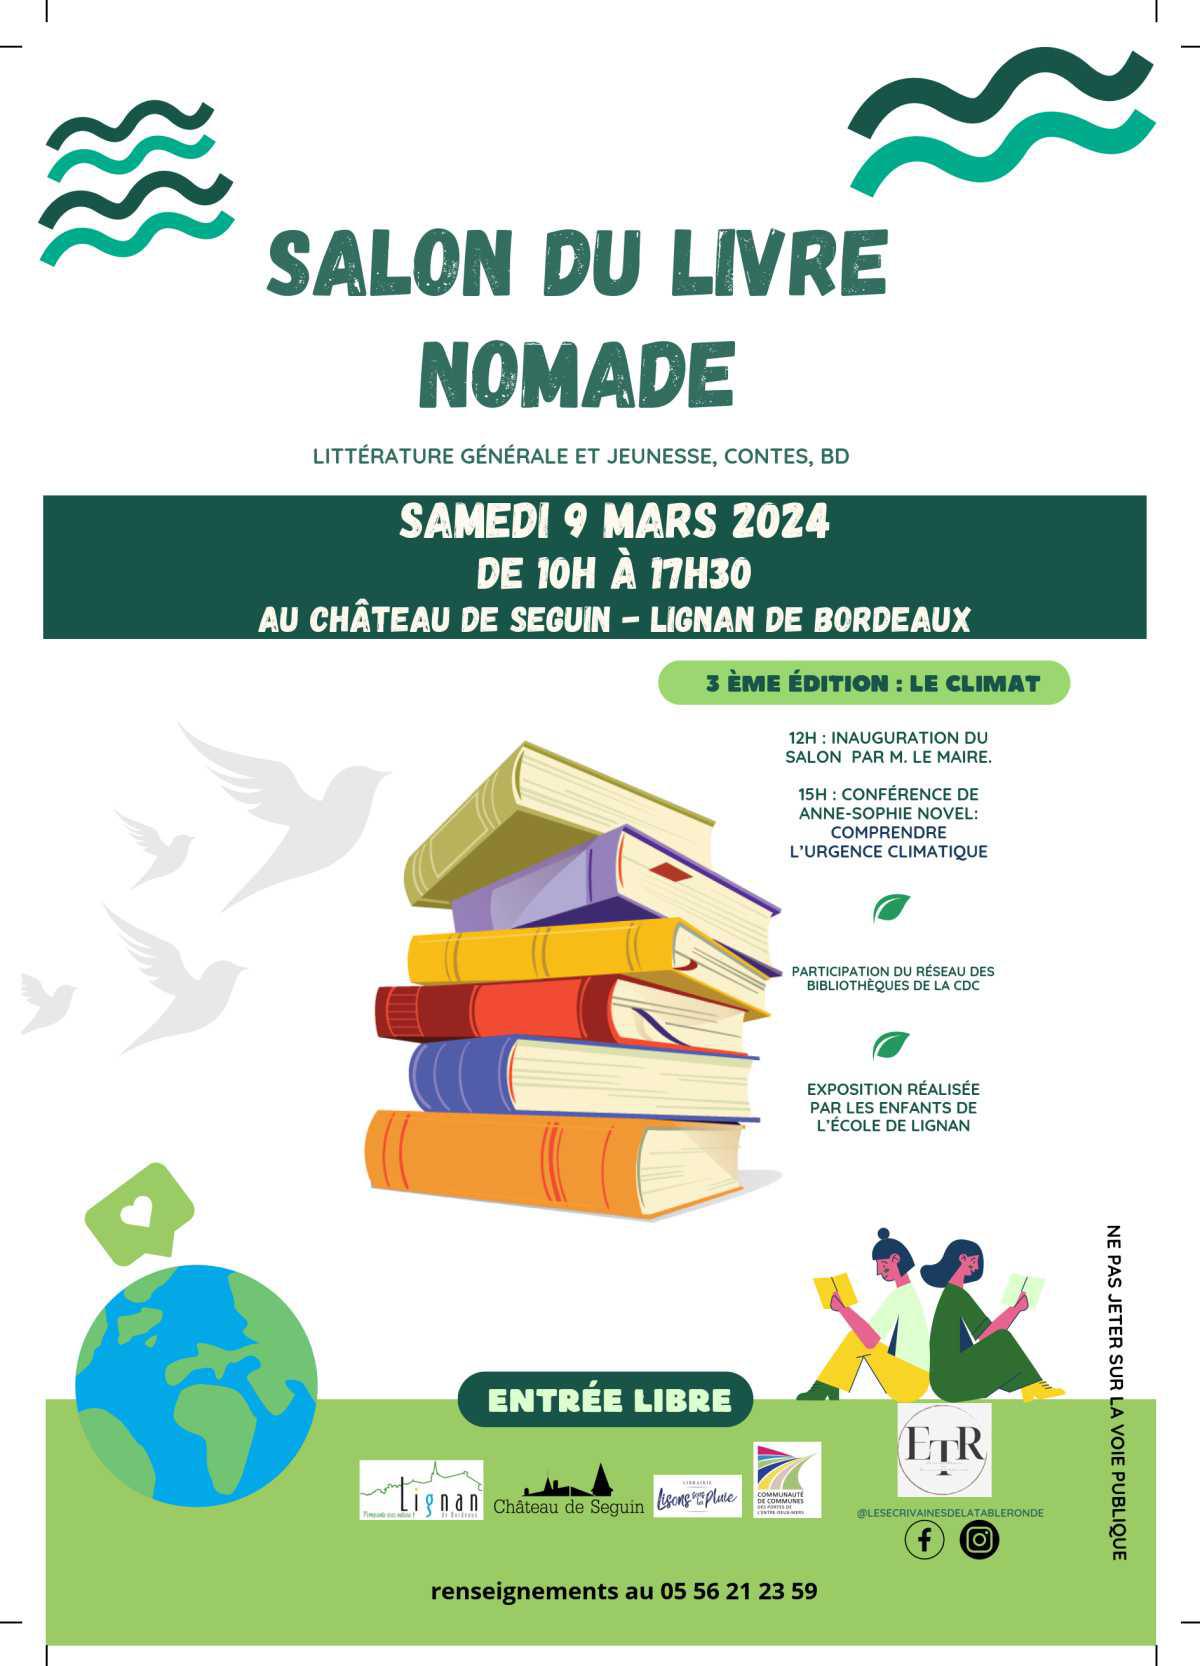 Salon du livre nomade à Lignan de Bordeaux